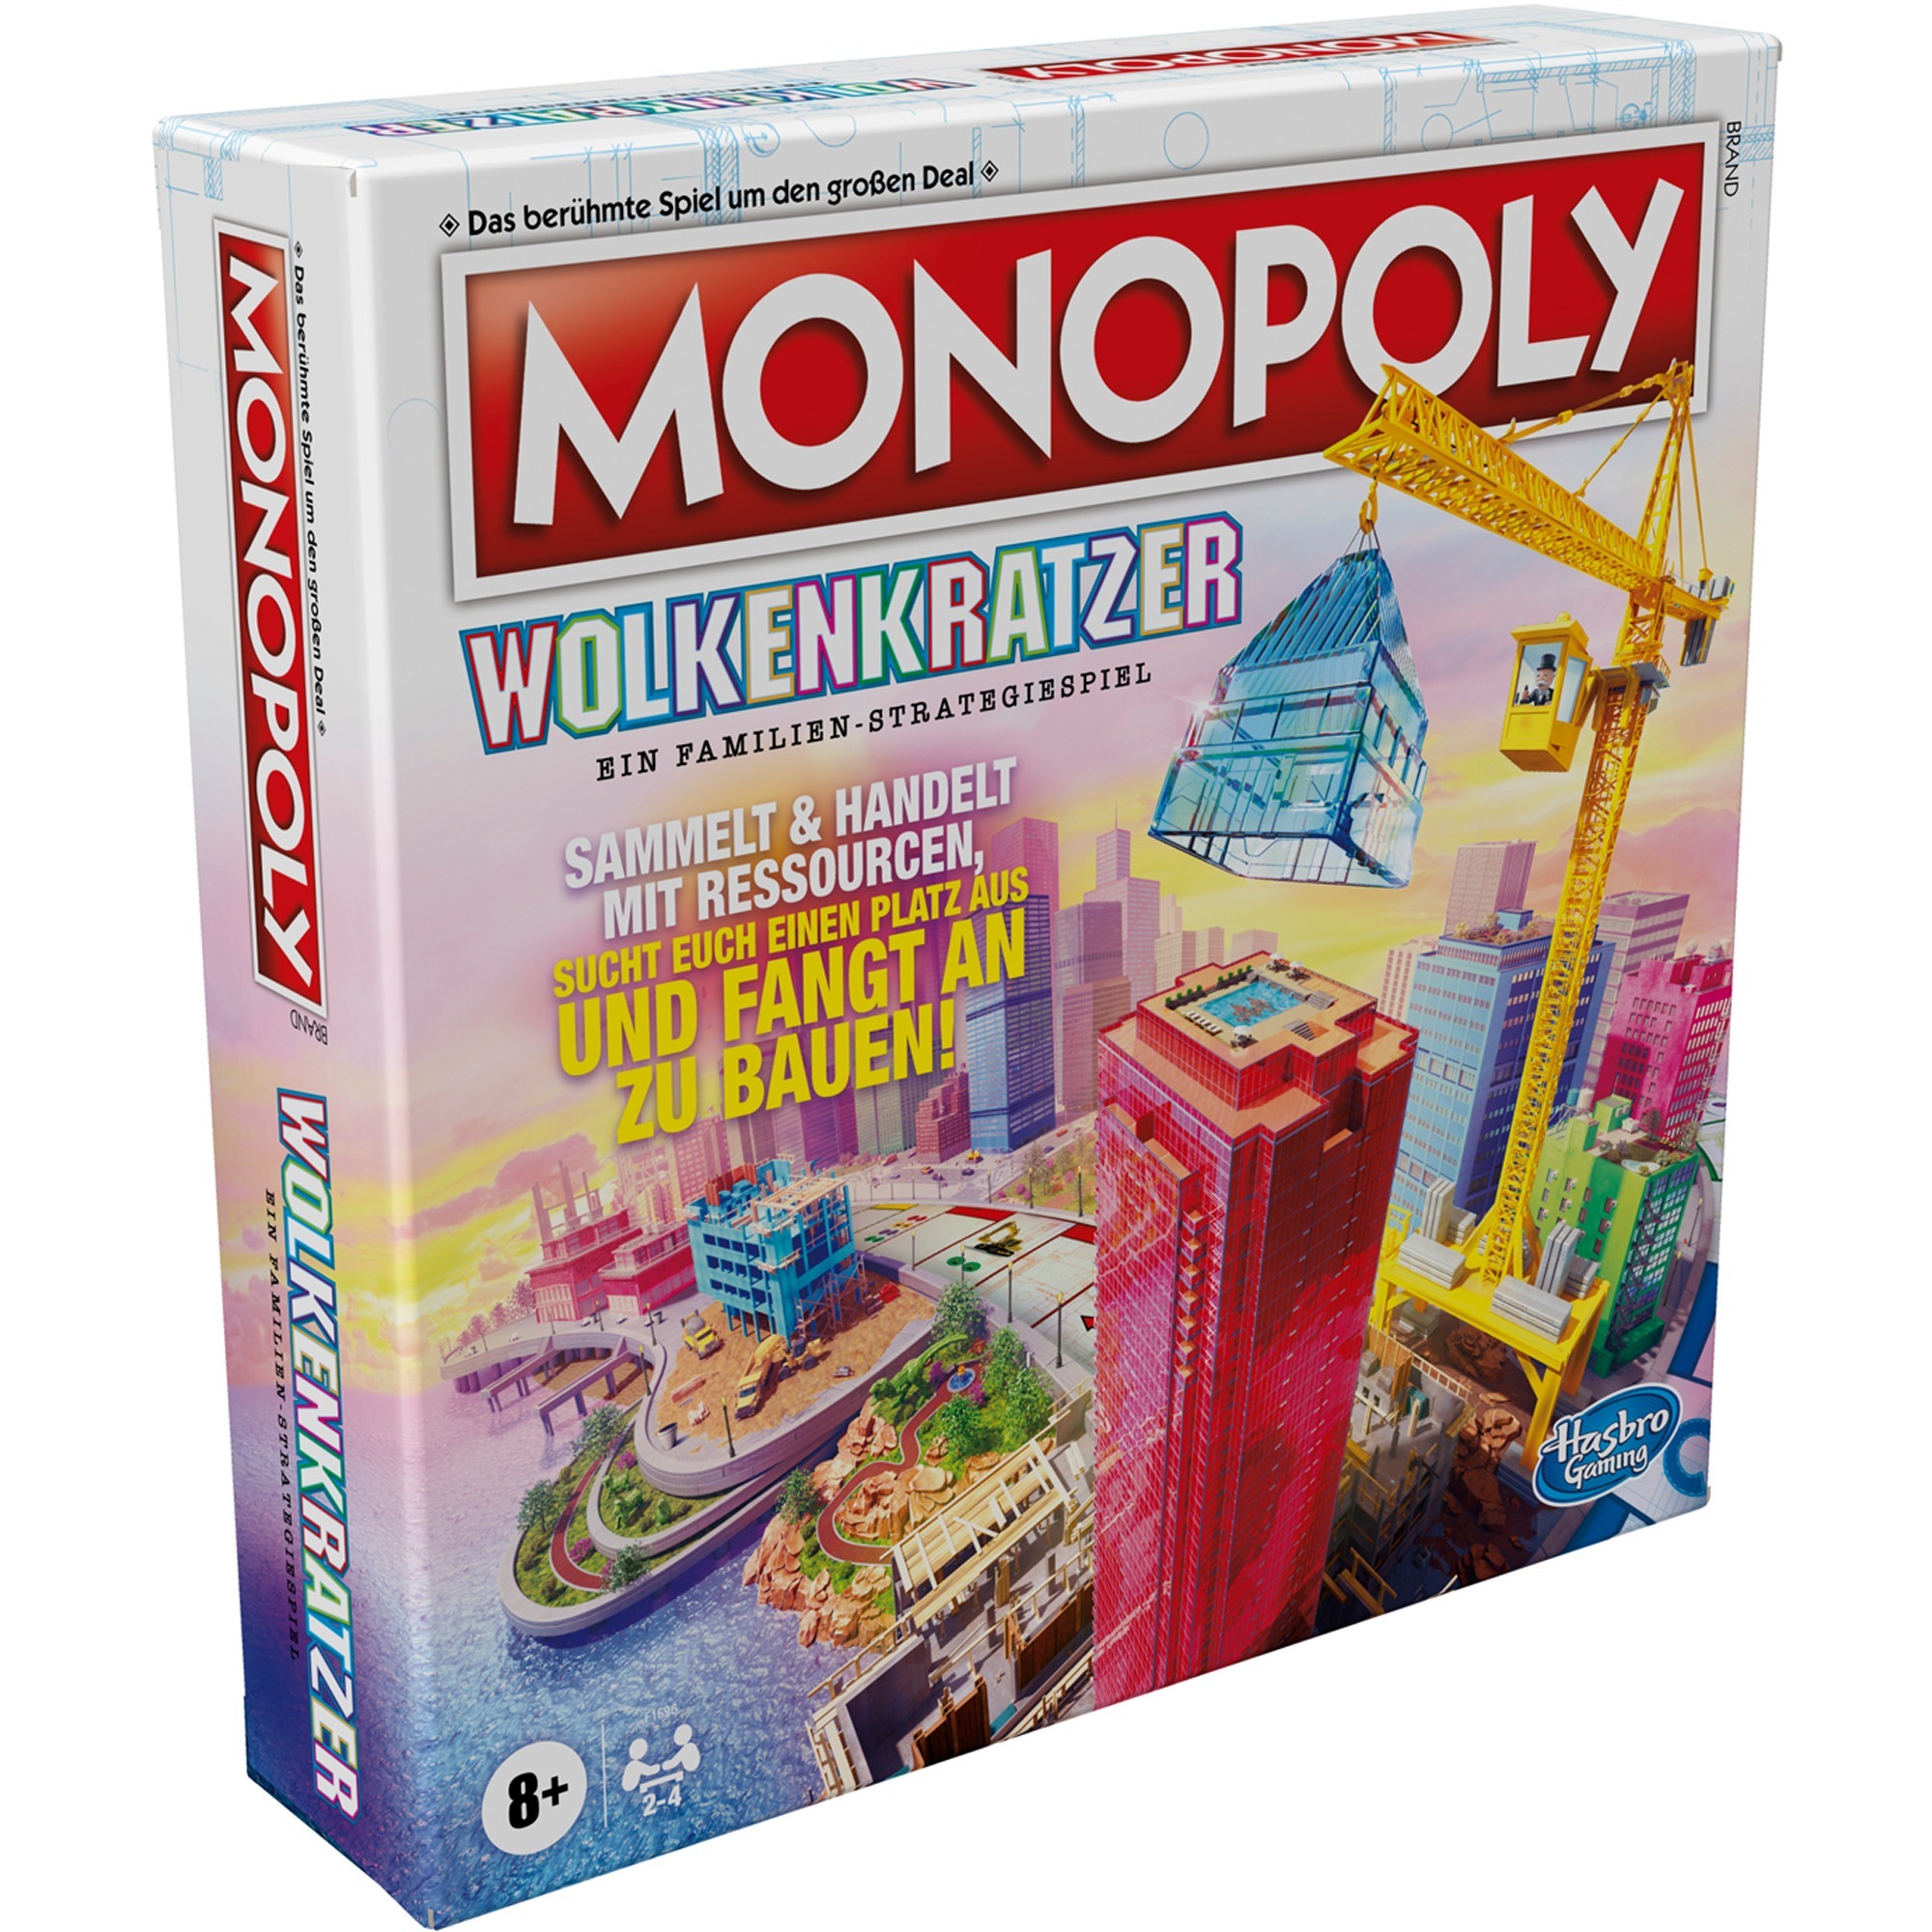 Image of Alternate - Monopoly Wolkenkratzer, Brettspiel online einkaufen bei Alternate